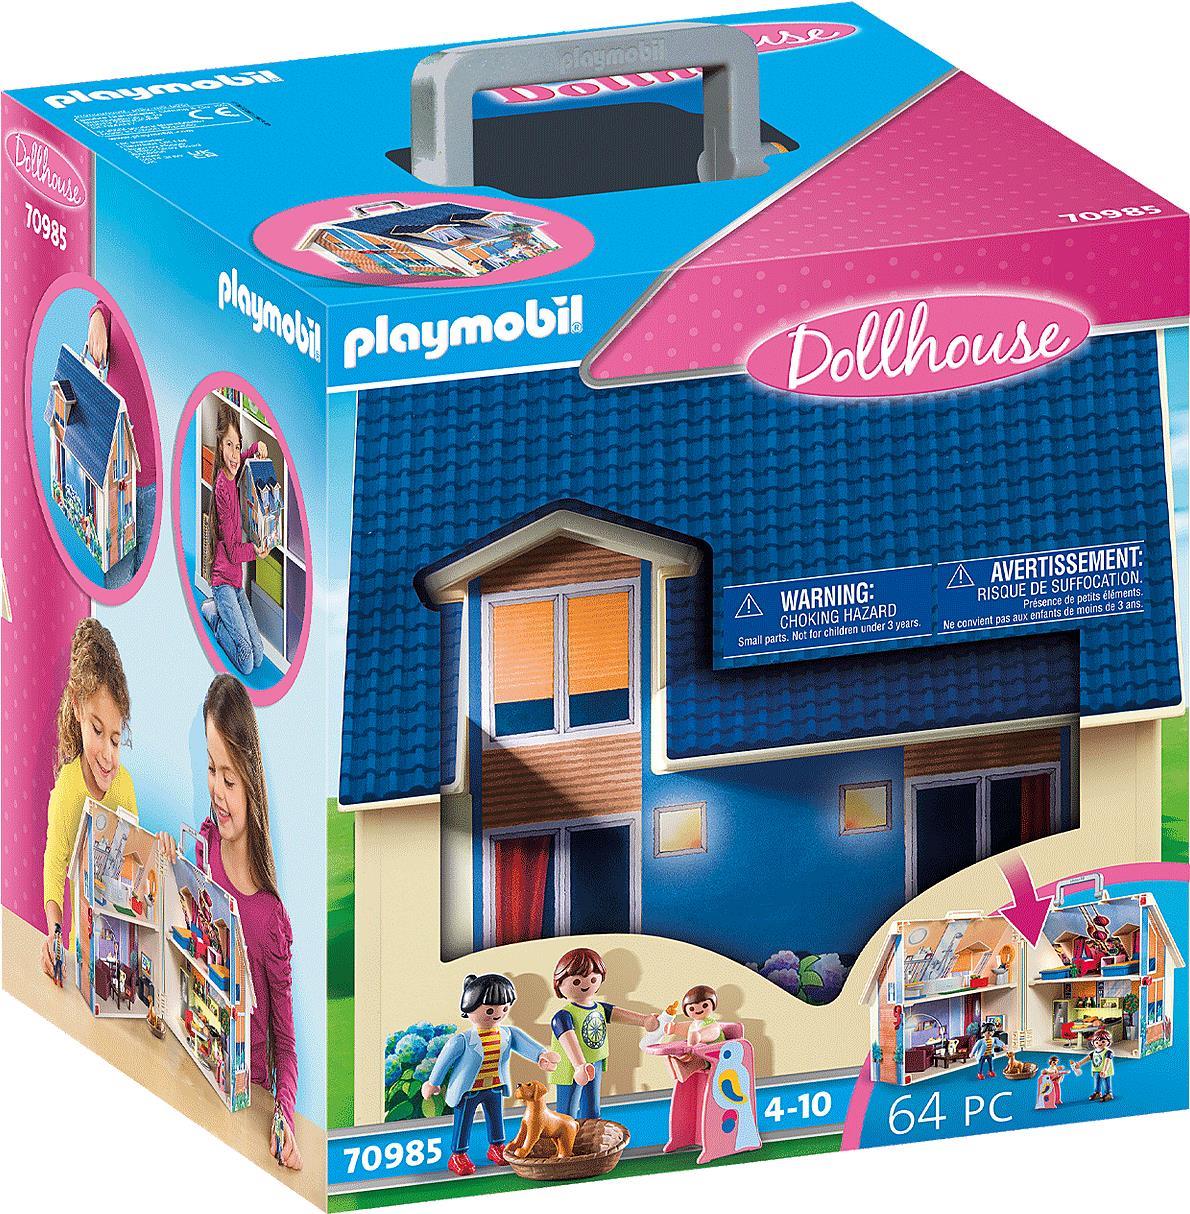 Playmobil Dollhouse Mitnehm-Puppenhaus - Bau - Junge/Mädchen - 4 Jahr(e) - Mehrfarbig - Kunststoff (70985)